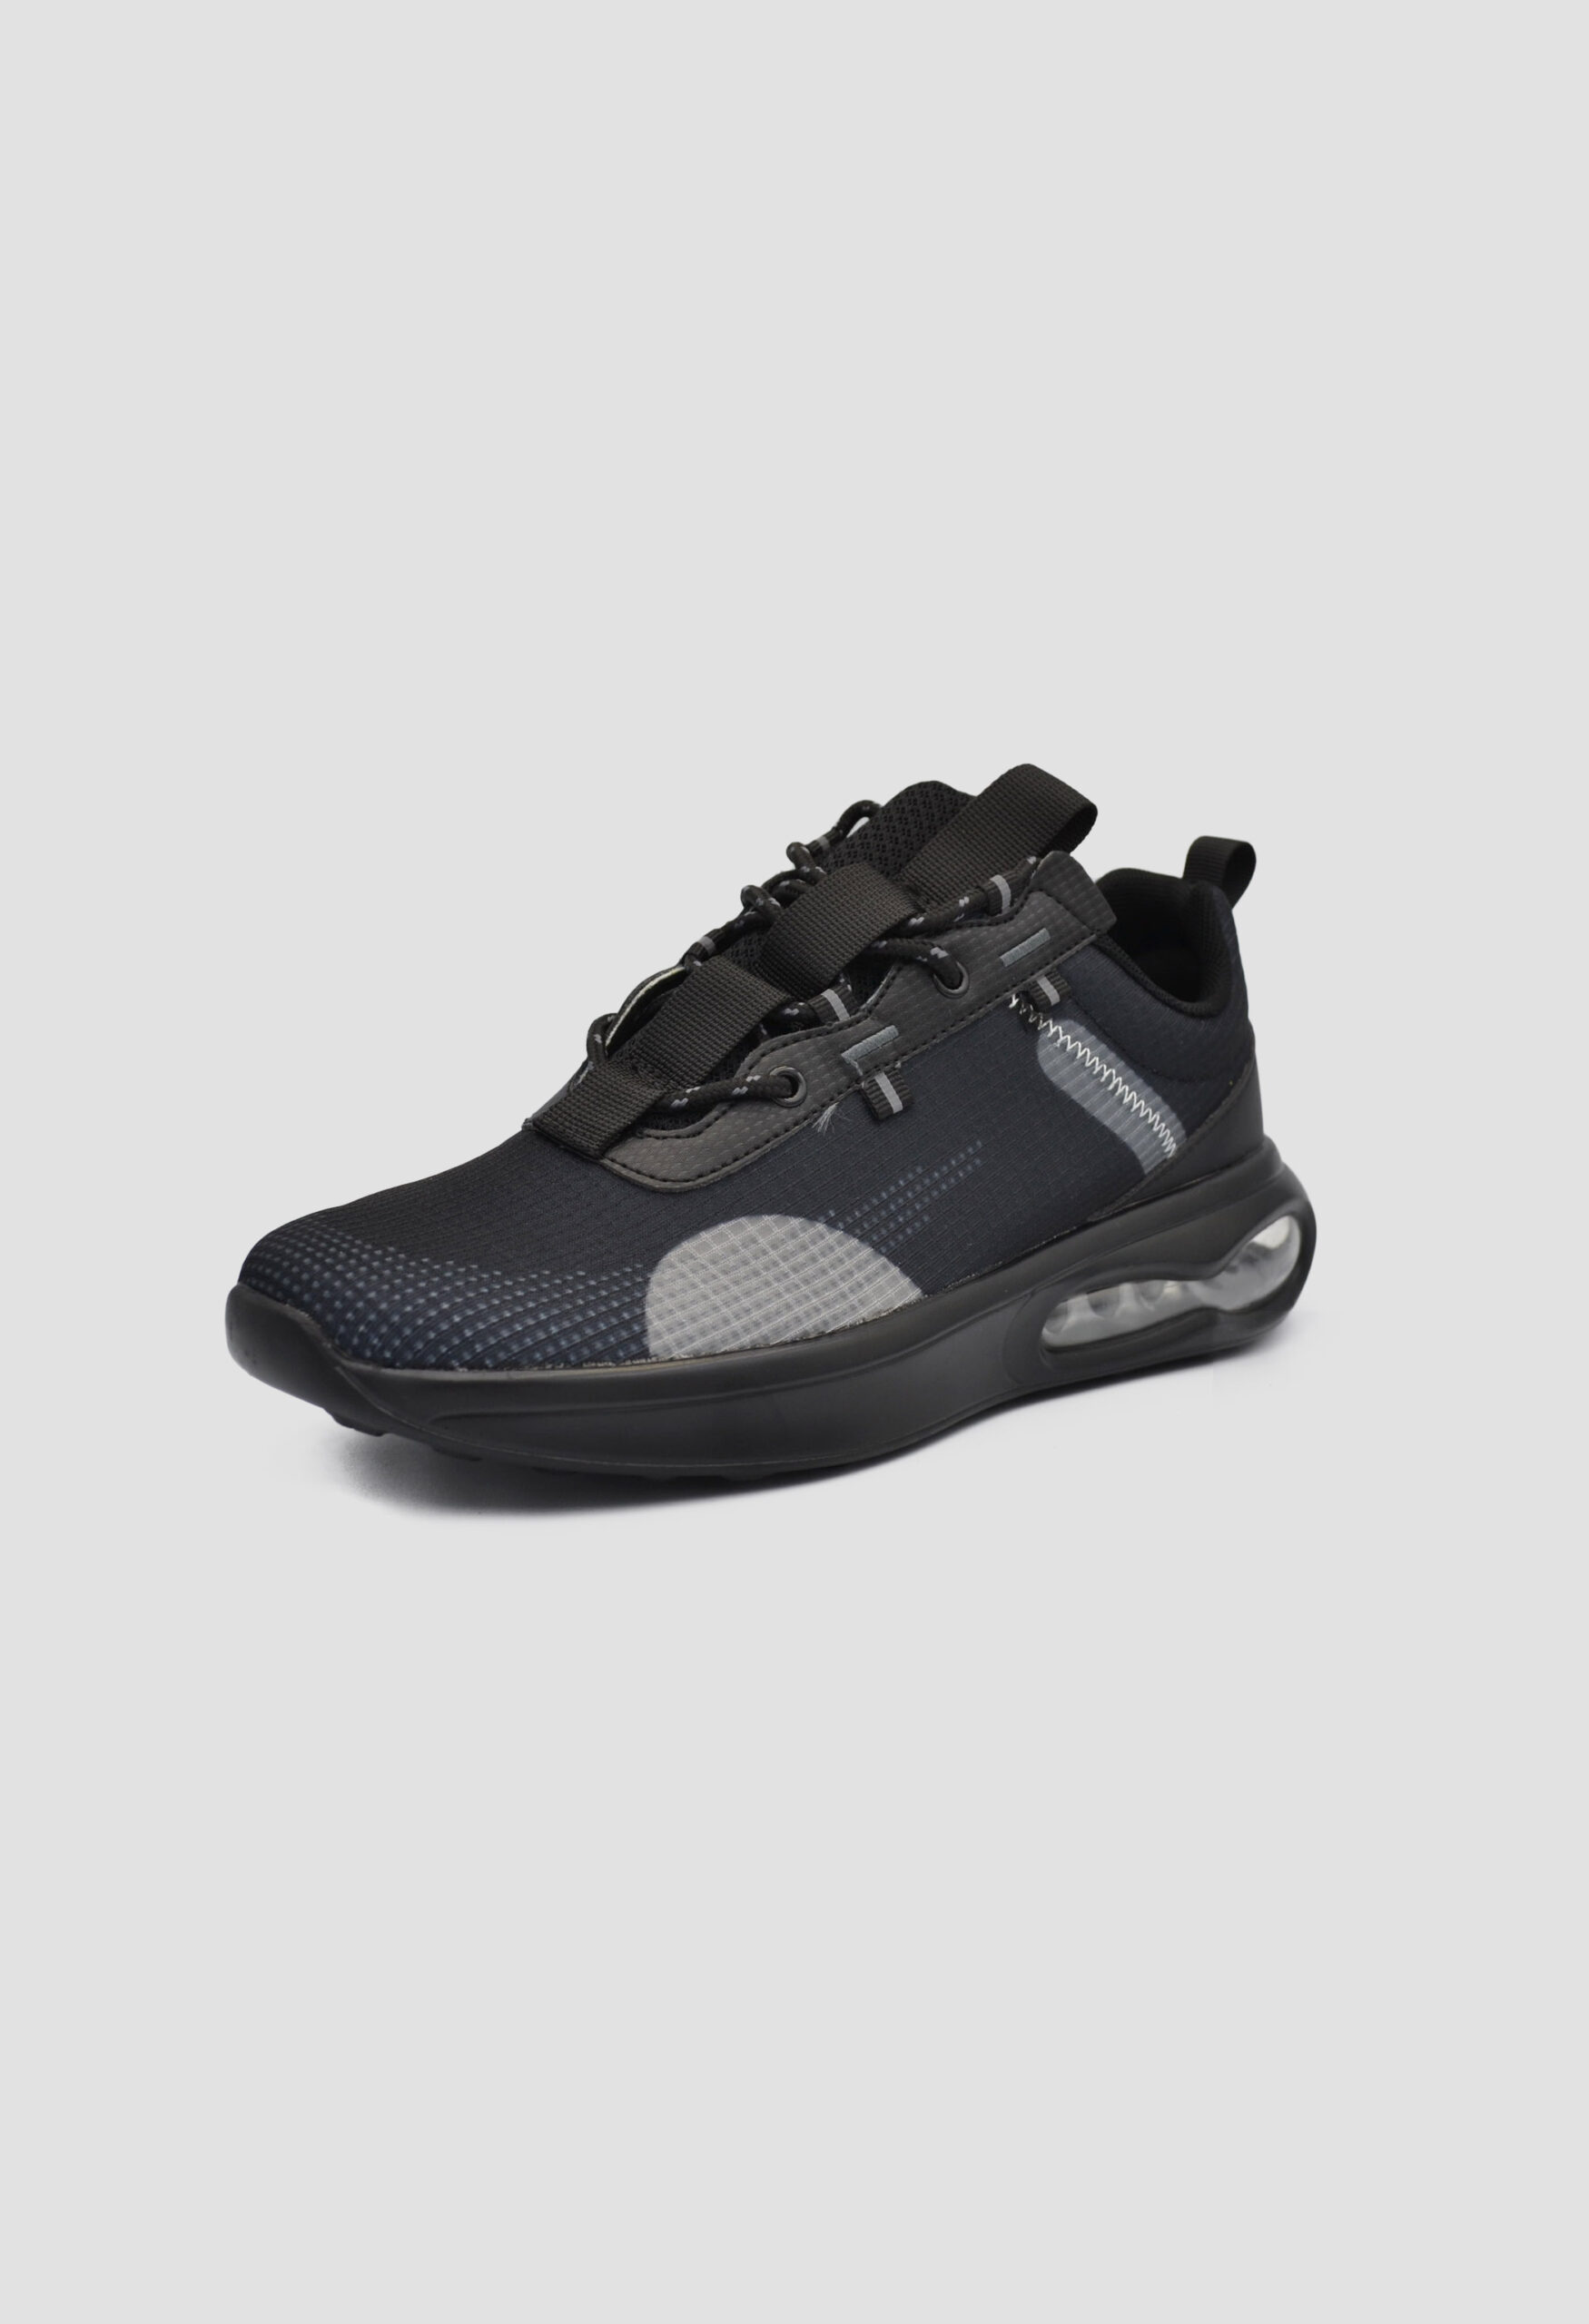 Ανδρικά Αθλητικά Παπούτσια για Τρέξιμο Μαύρο / M-2208-black ΑΘΛΗΤΙΚΑ & SNEAKERS joya.gr